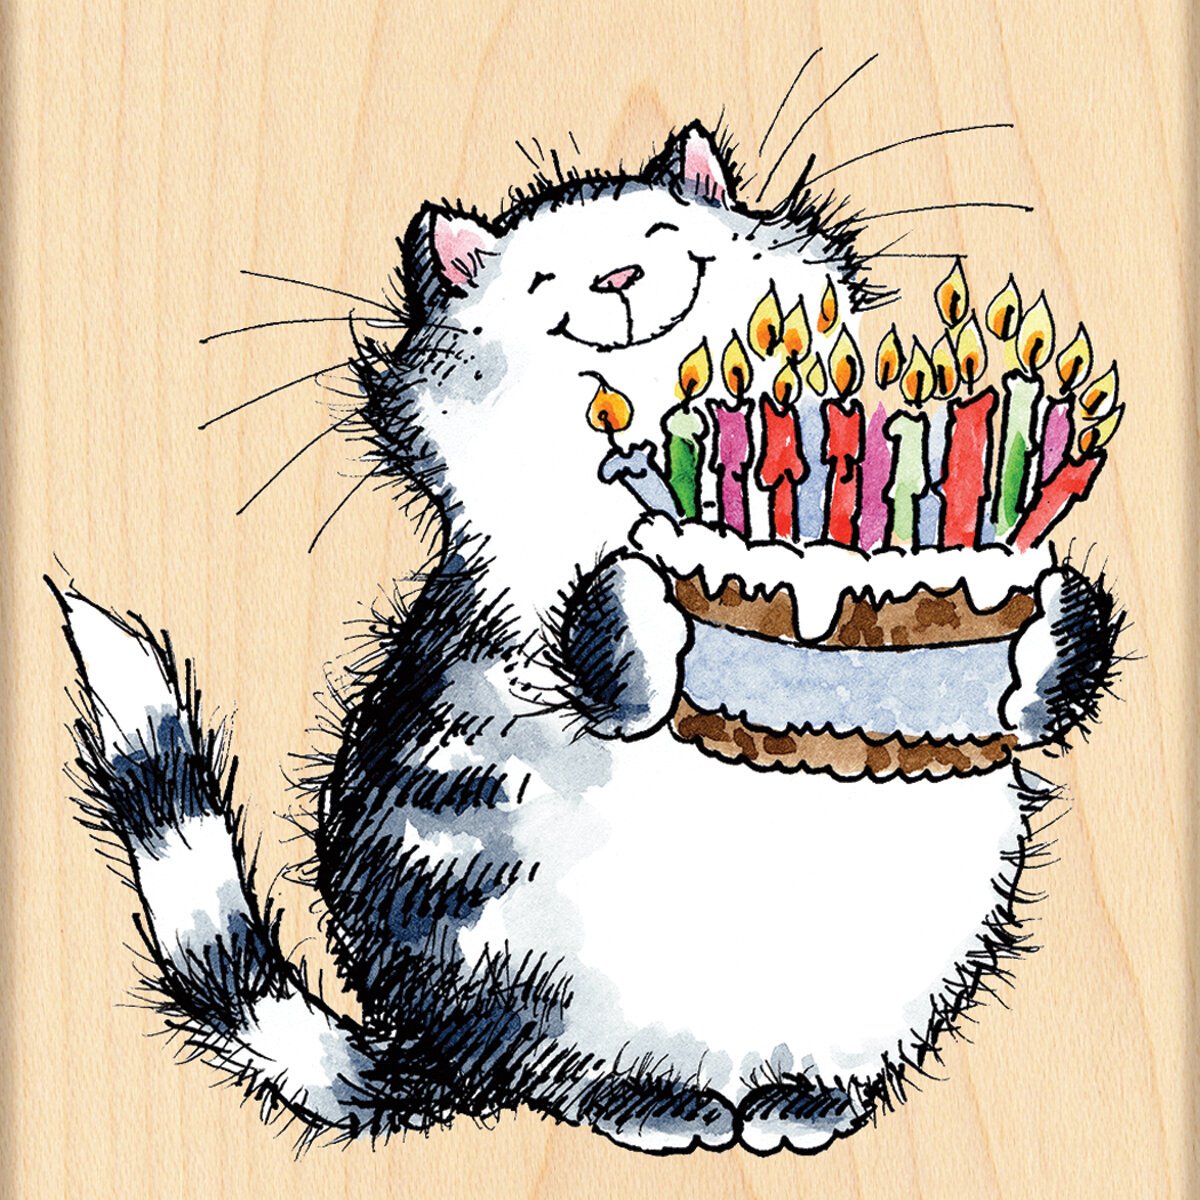 Смешная поздравительная открытка. С днем рождения кот. Рисунки на деньрожднгия\\. Ресункина день рождения. Коты поздравляют с днем рождения.